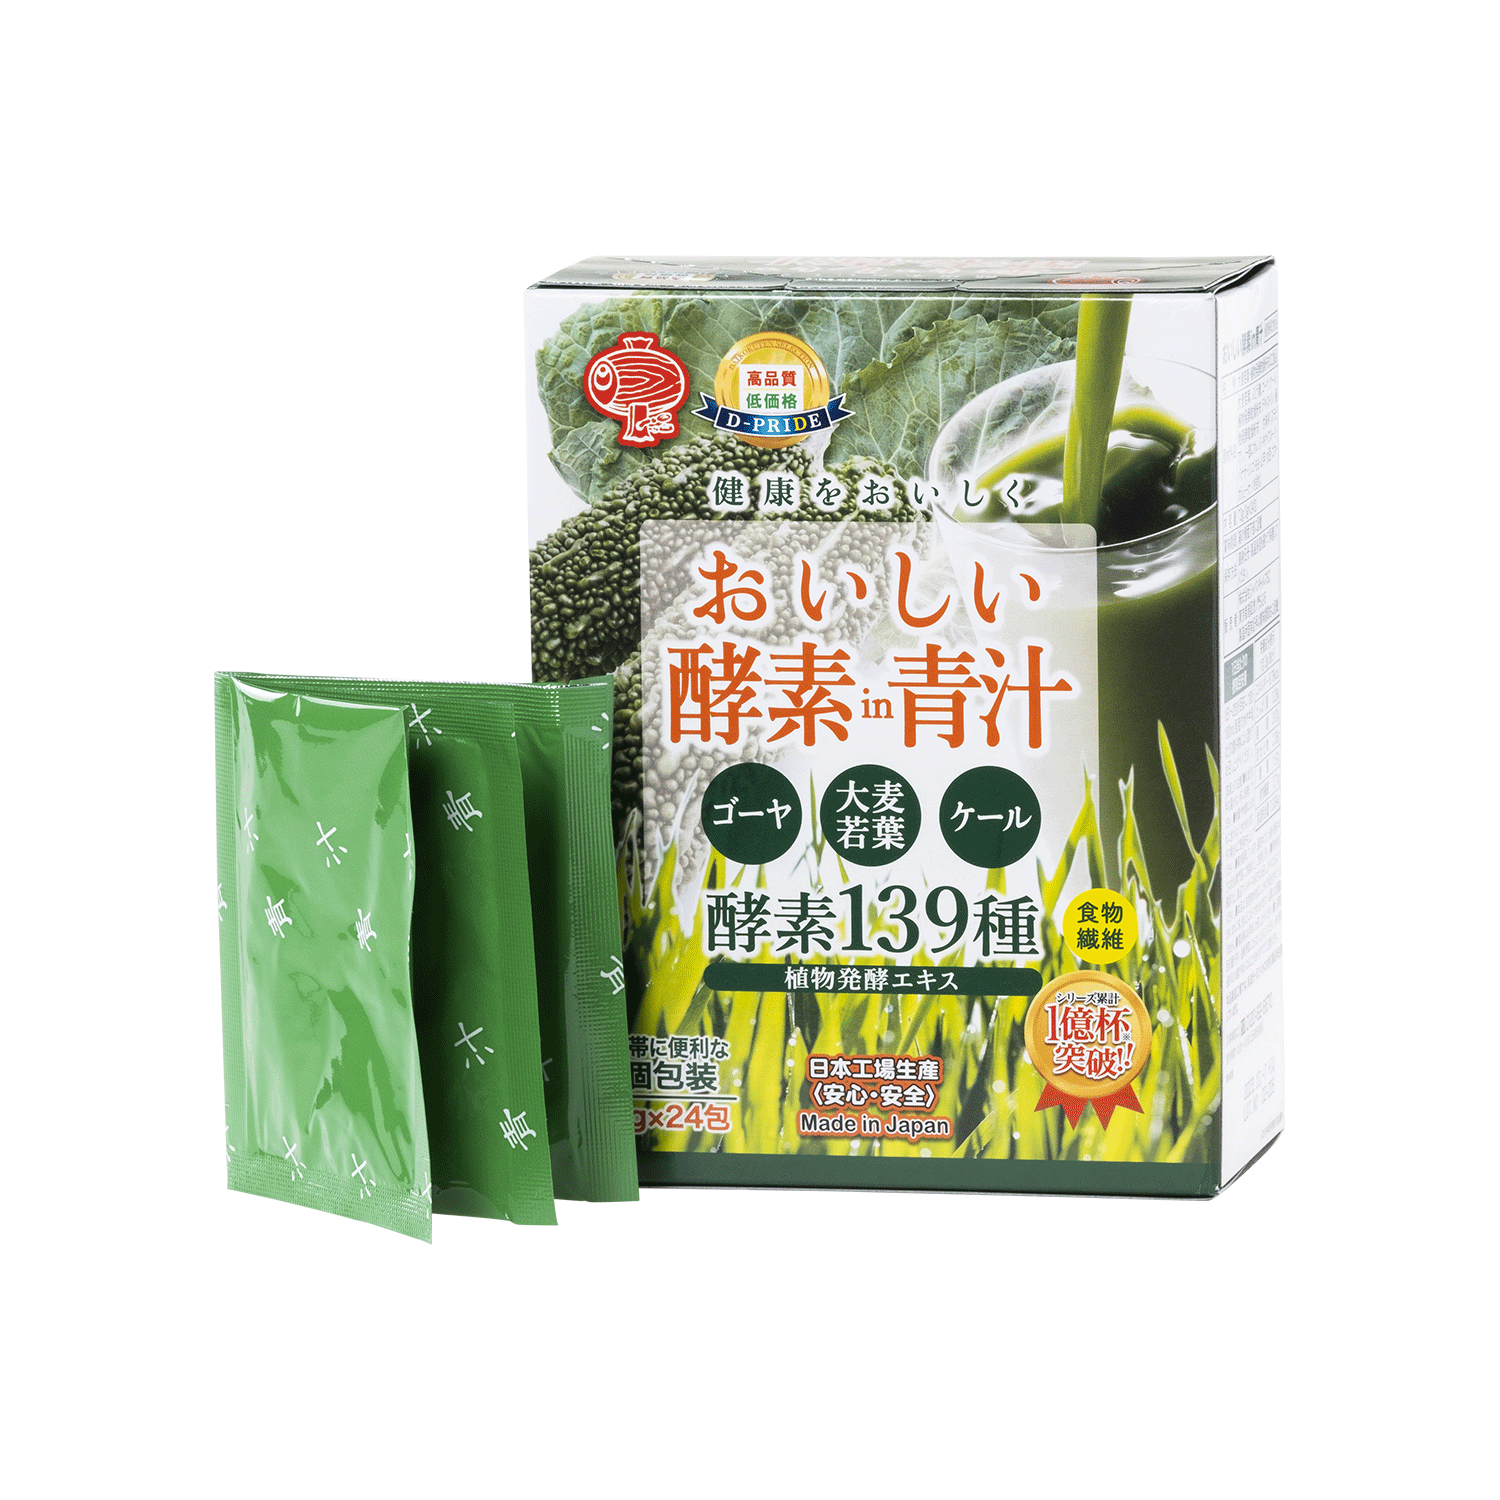 おいしい酵素in青汁- 優秀品質銀賞モンドセレクション2021